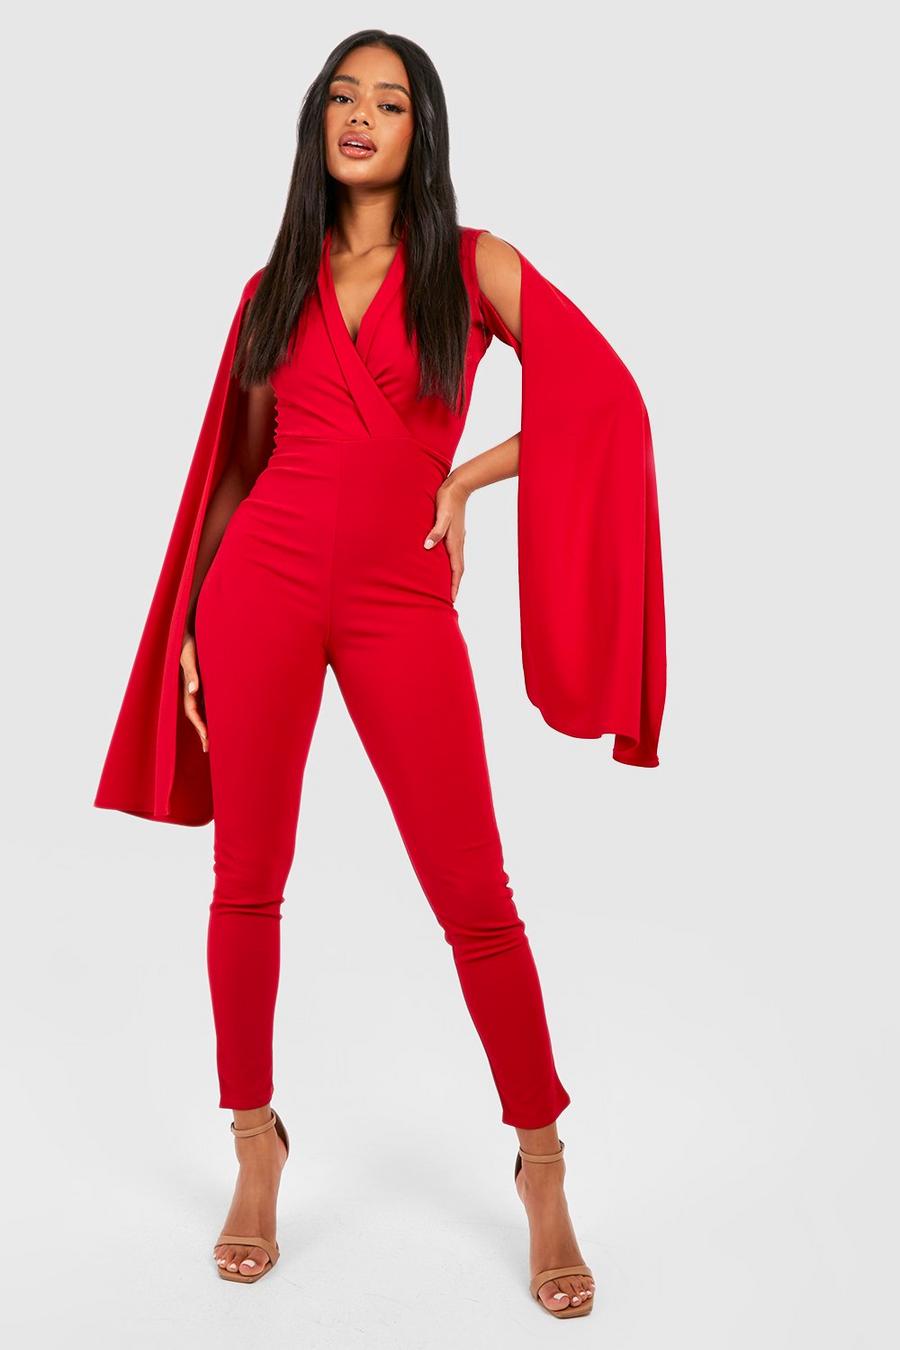 Red Getailleerde Slim Fit Jumpsuit Met Cape Detail